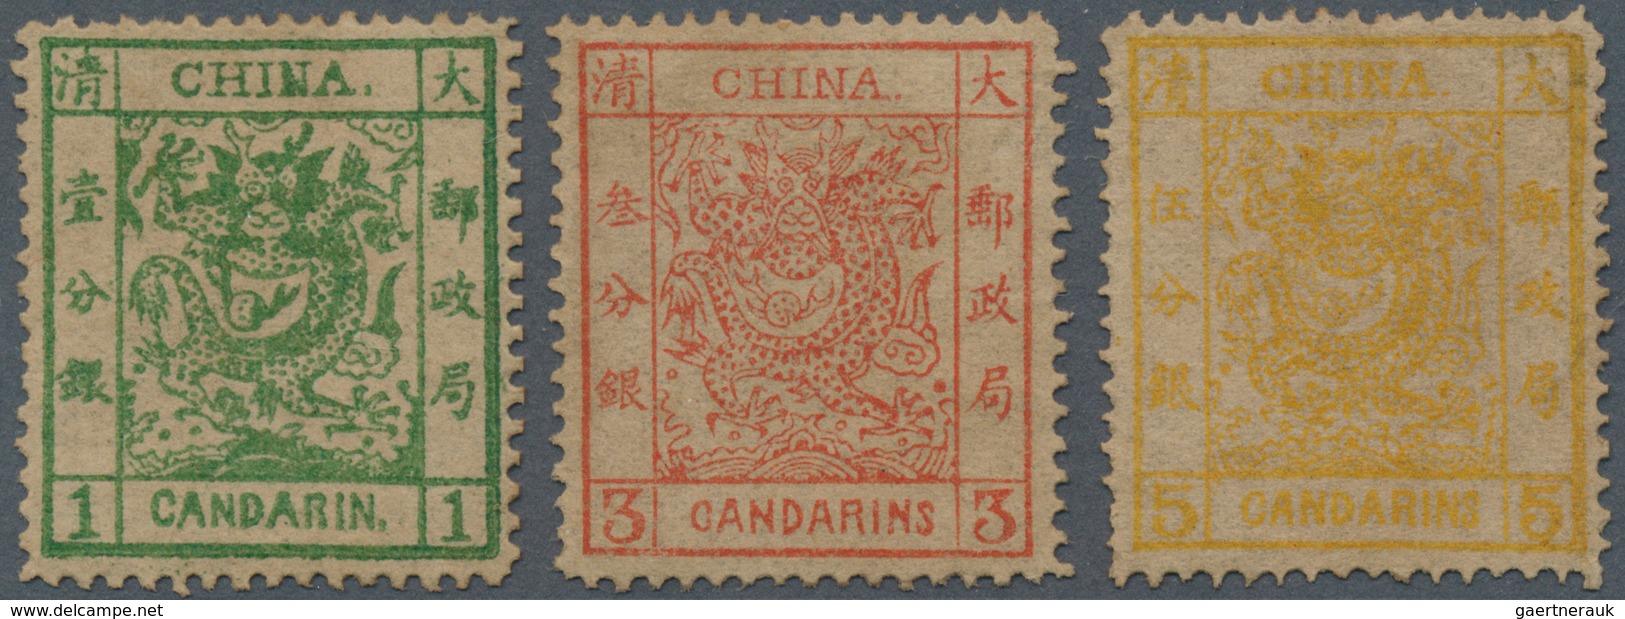 China: 1878, Large Dragons Thin Paper Set, Unused No Gum (Michel Cat. 1570.-). - 1912-1949 République